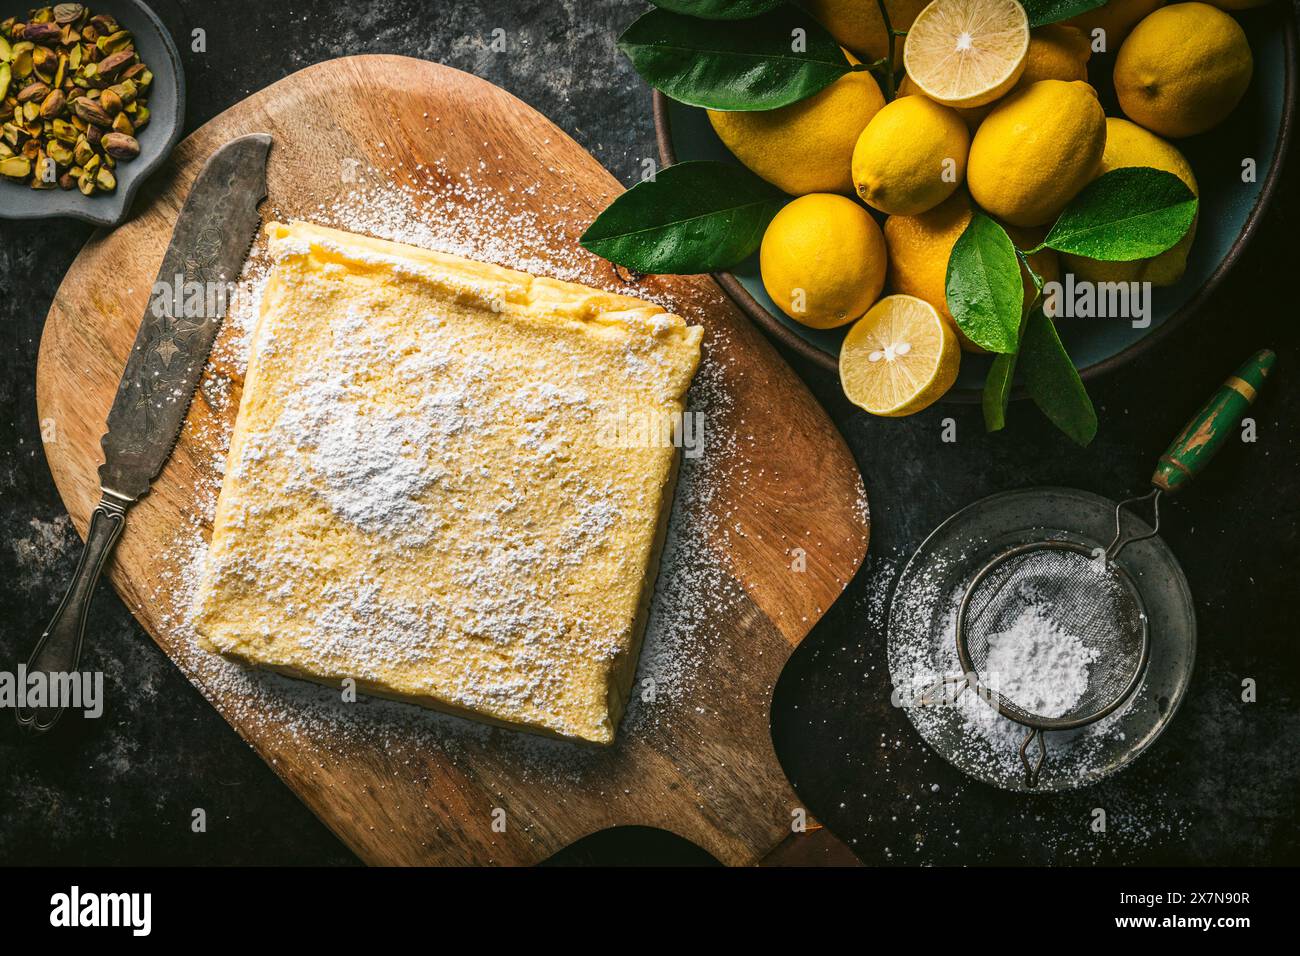 Torta al limone, non affettata, su un tagliere di legno con coltello per torte, zucchero a velo e ciotola di limoni freschi Foto Stock